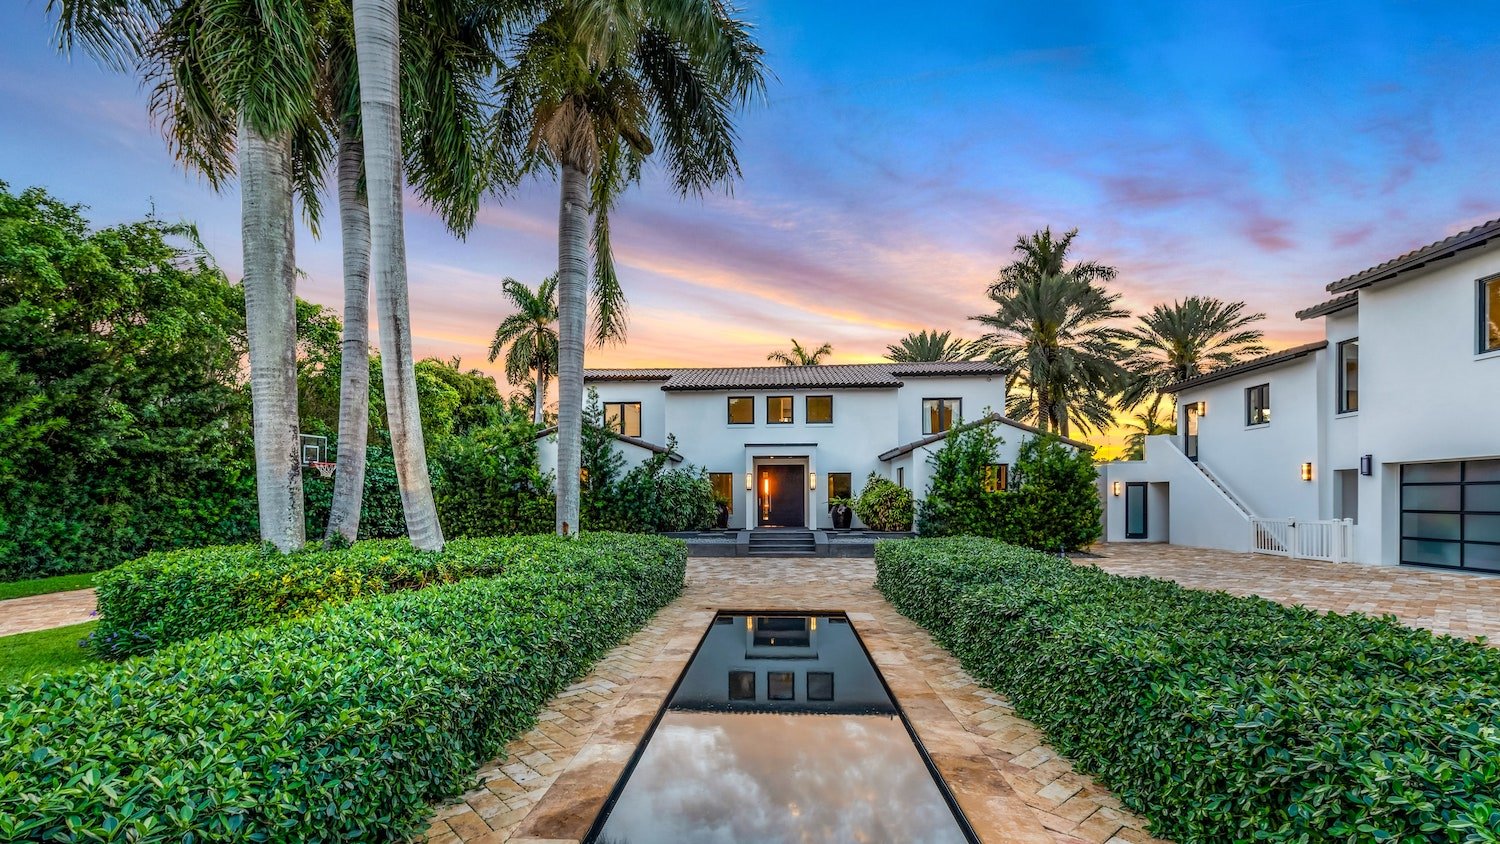 Casa Jennifer Lopez y Ben Affleck en Miami entrada